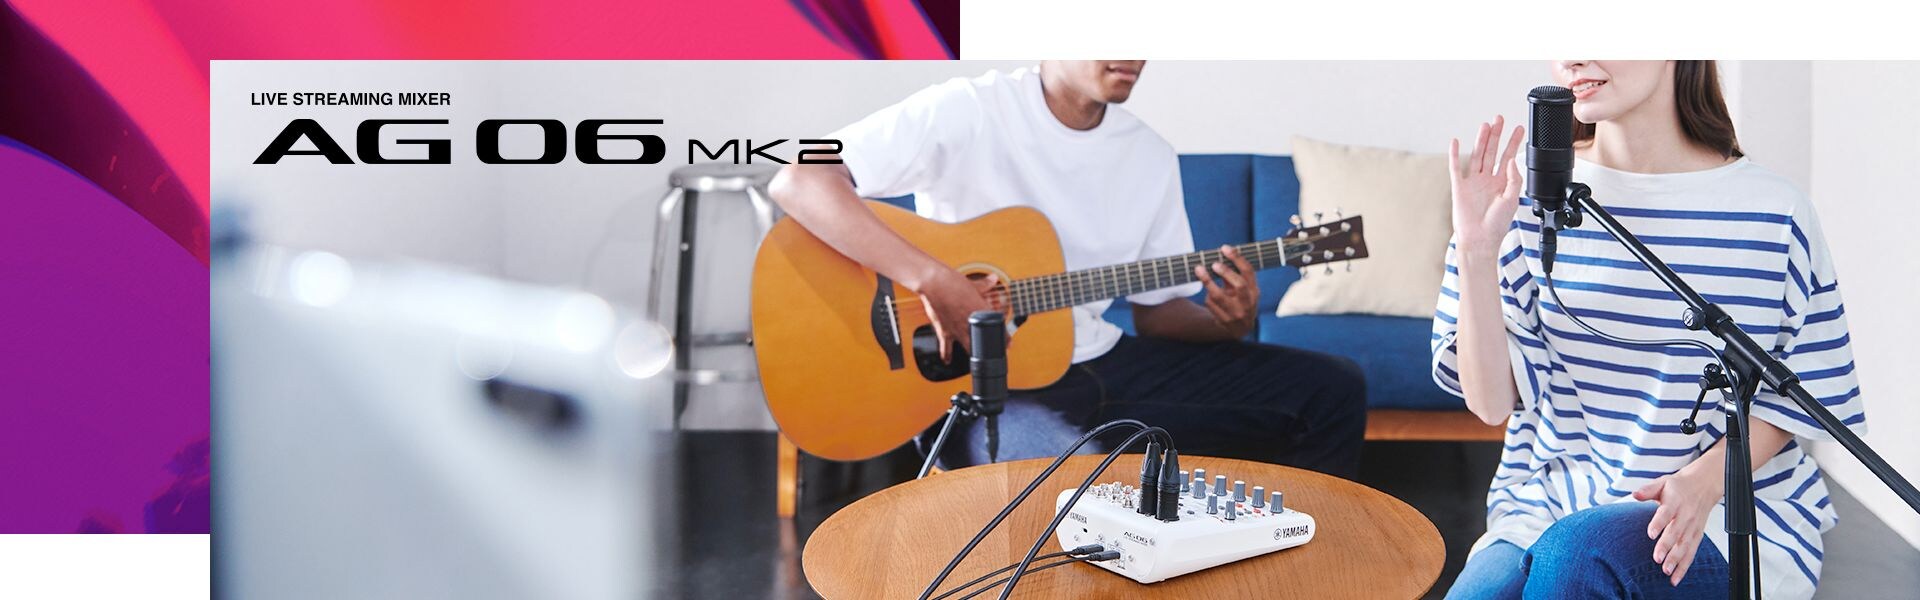 Yamaha Live Streaming Mixer AG06MK2 #1